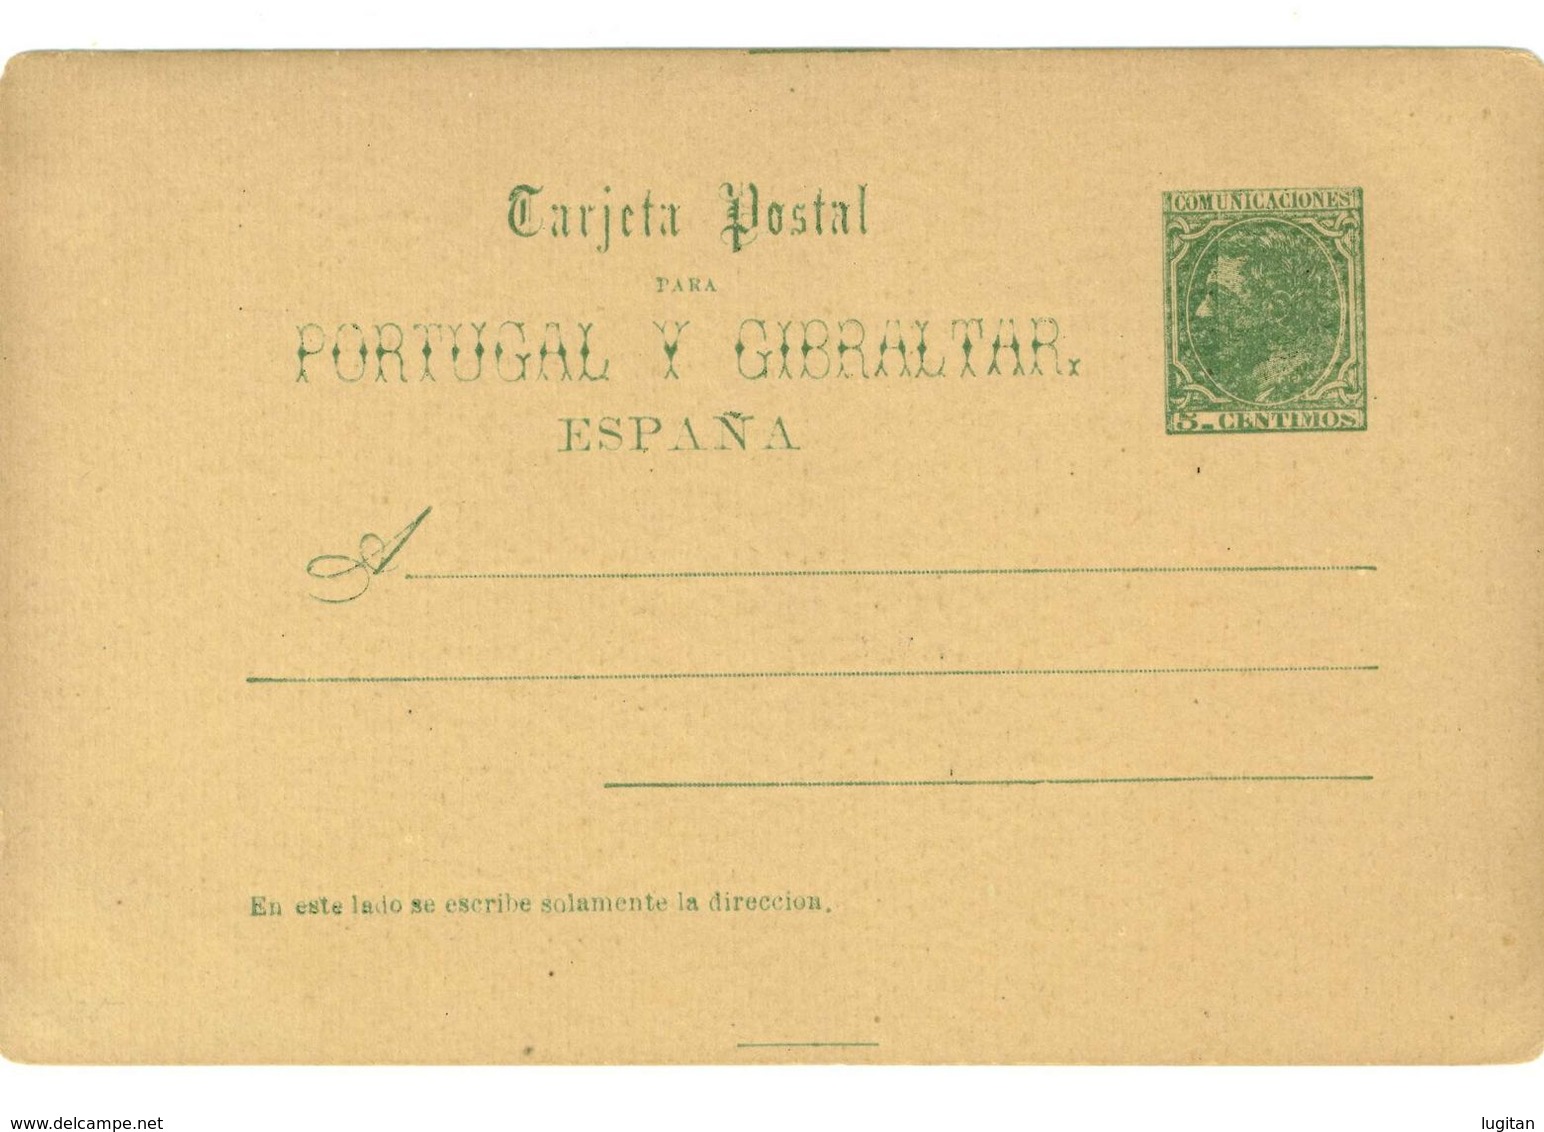 SPAGNA - INTERO POSTALE  - PER IL PORTOGALLO E GIBILTERRA  ANNO 1884 - NON VIAGGIATO - 5 CENTIMOS - 1850-1931